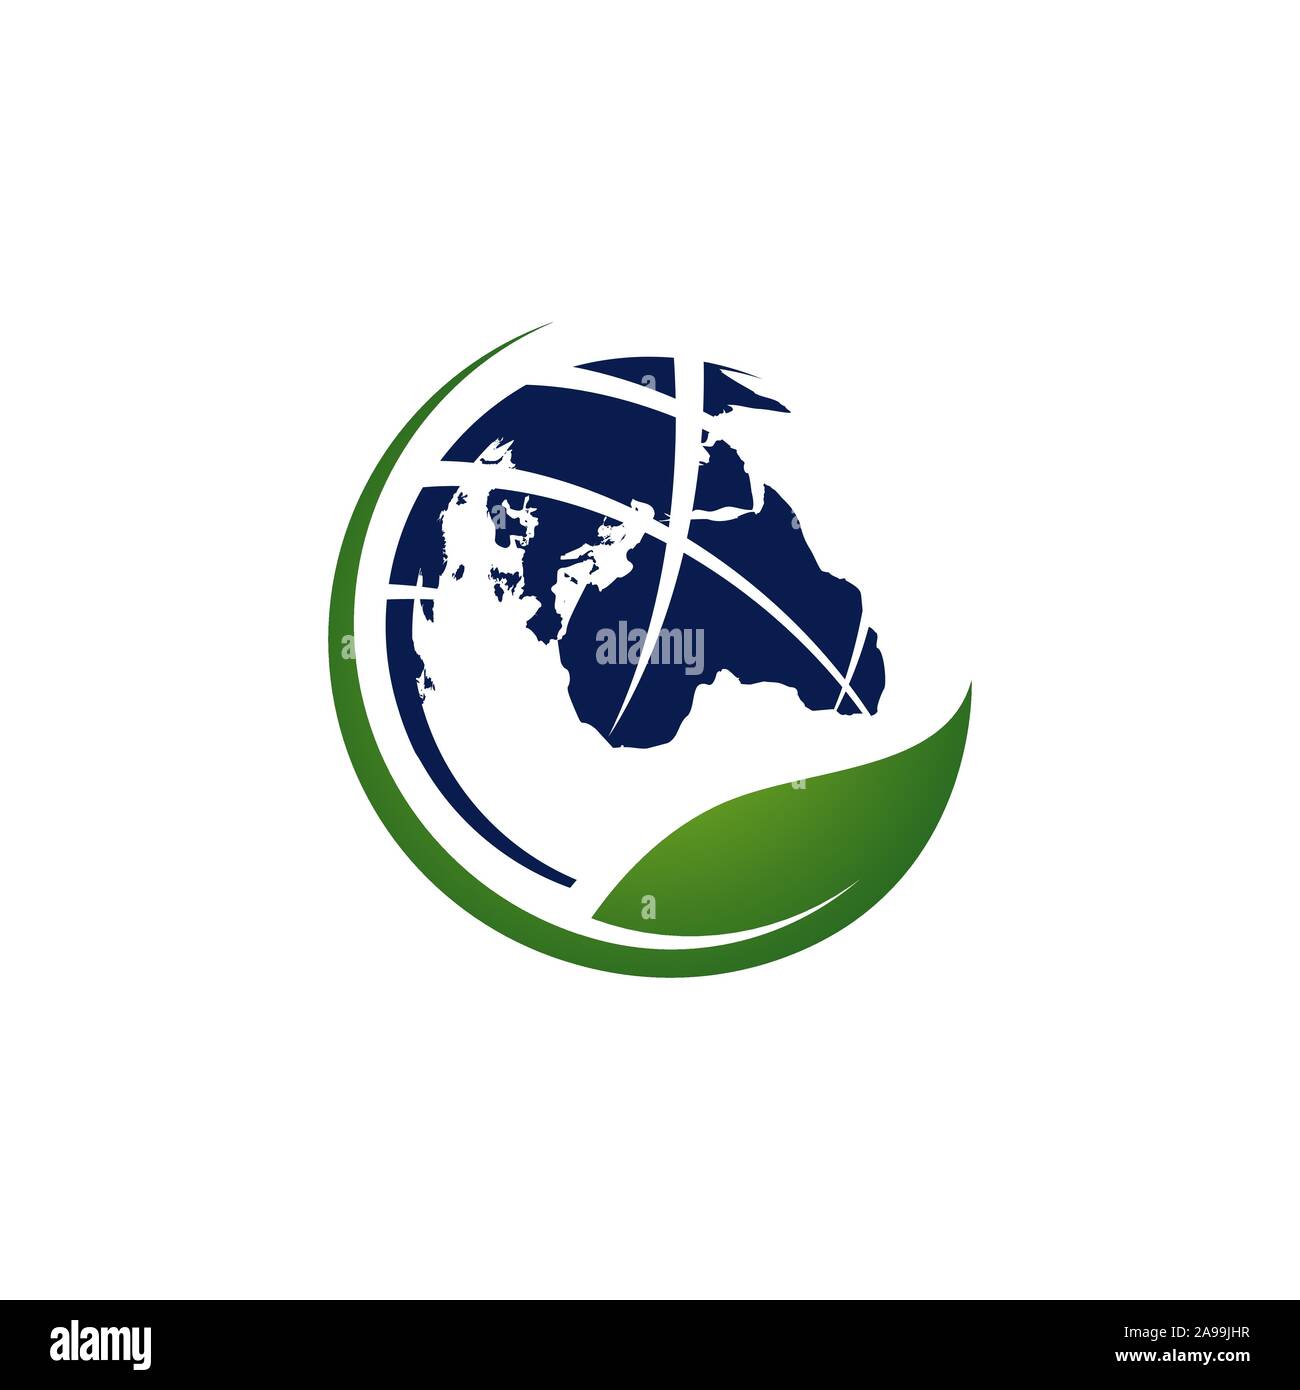 Vegetarische vegane Welt logo Vektor Icon mit Kugel und Blatt element Stock Vektor